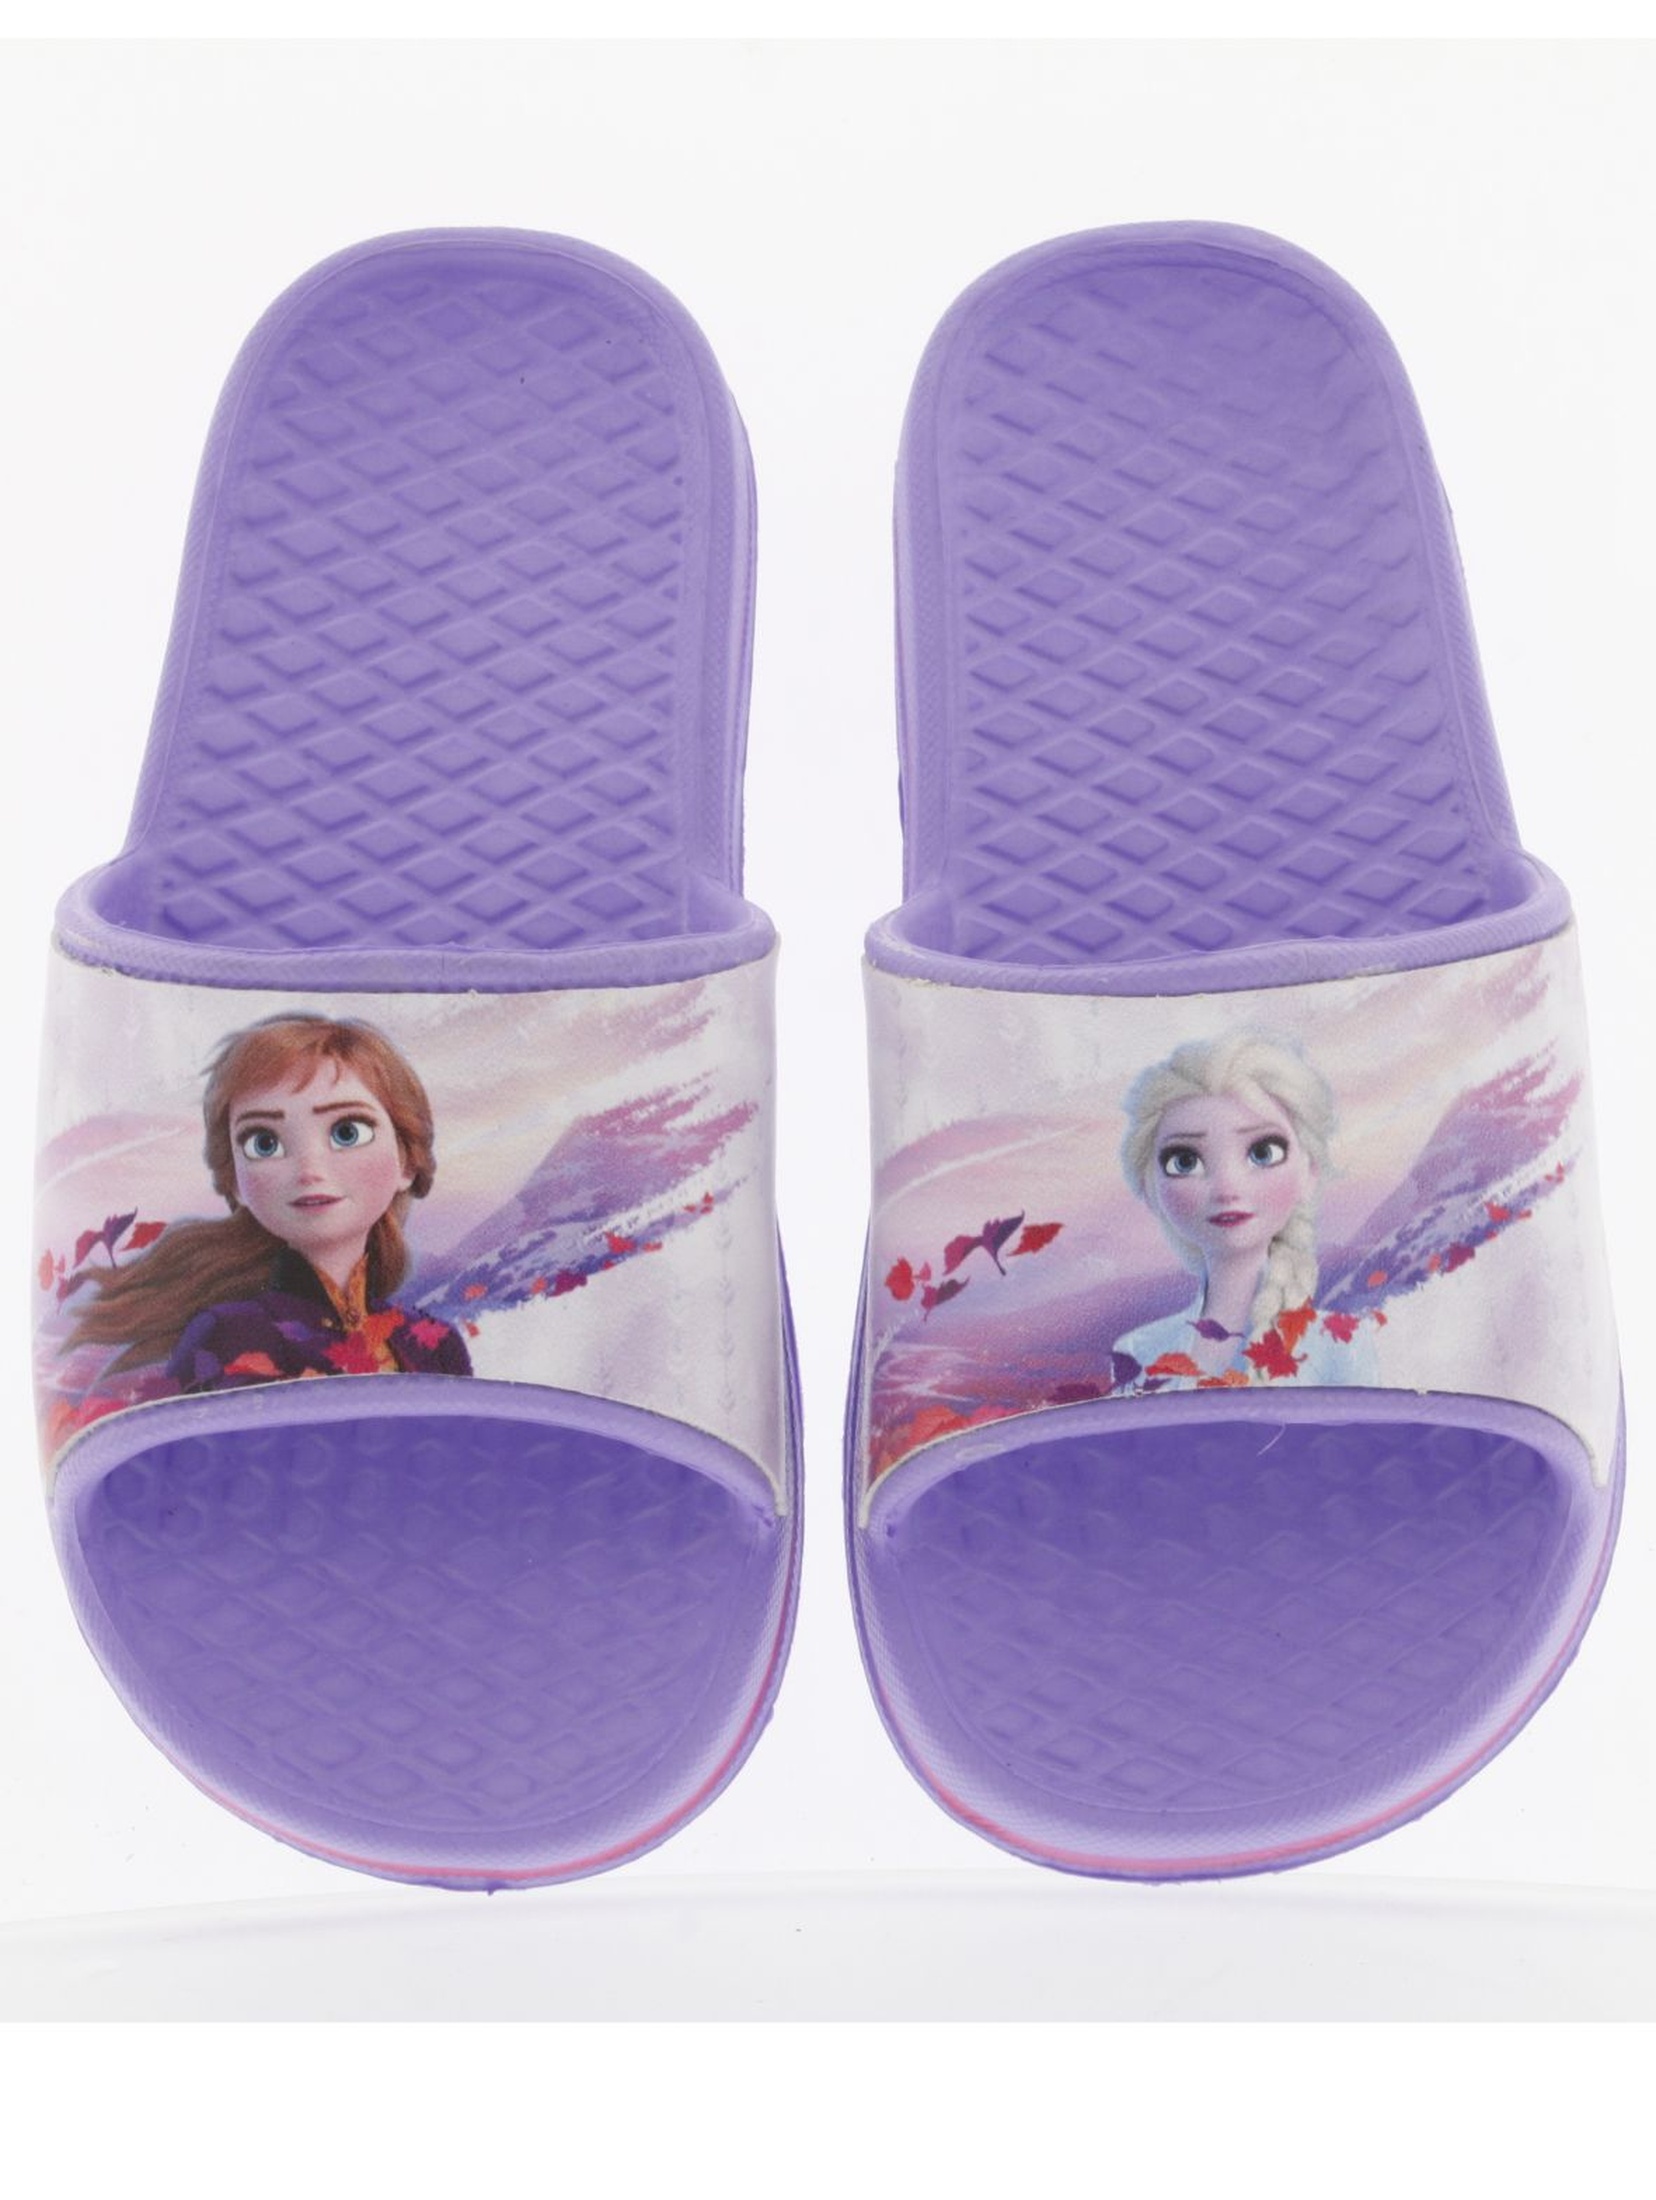 Fioletowe klapki dla dziewczynki Frozen